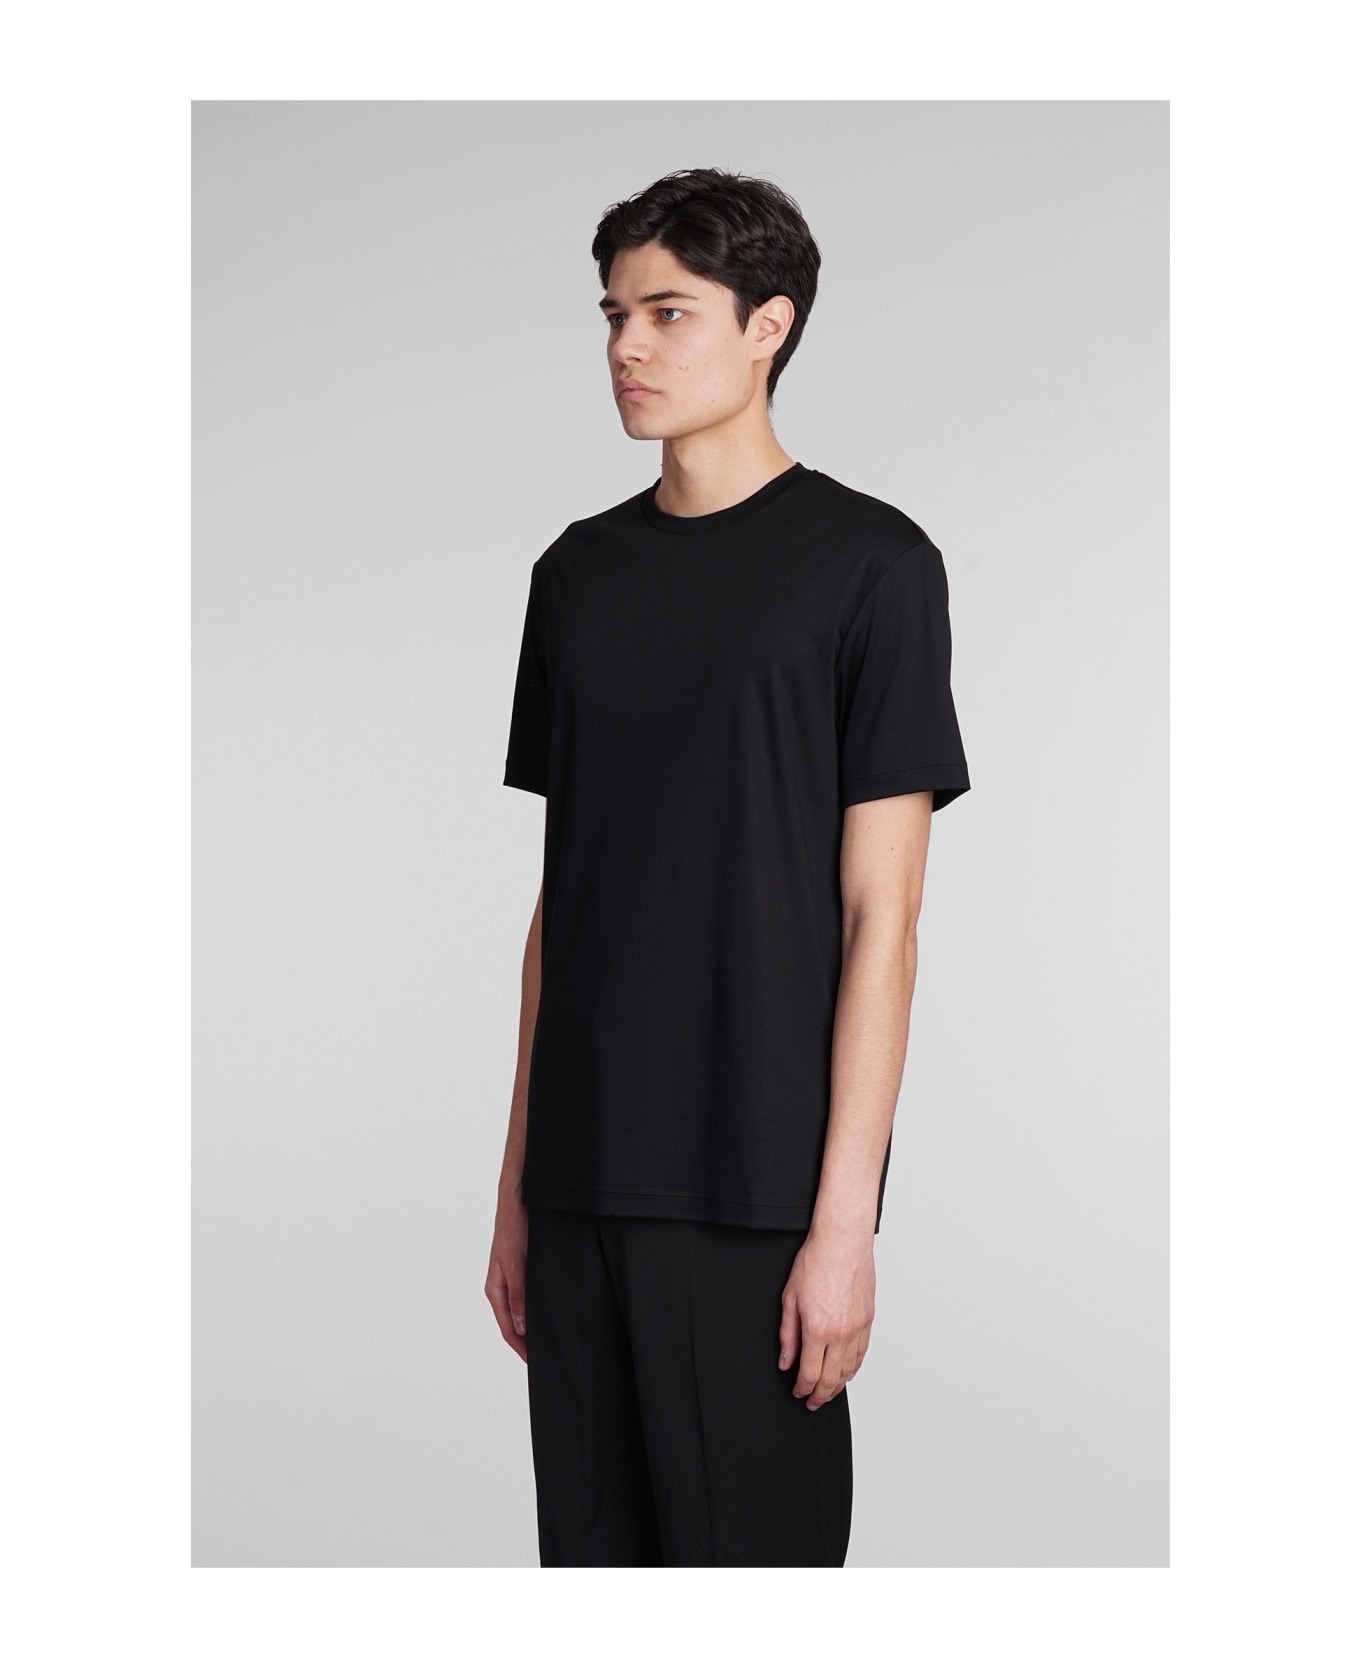 Giorgio Armani T-shirt In Black Cotton - black シャツ